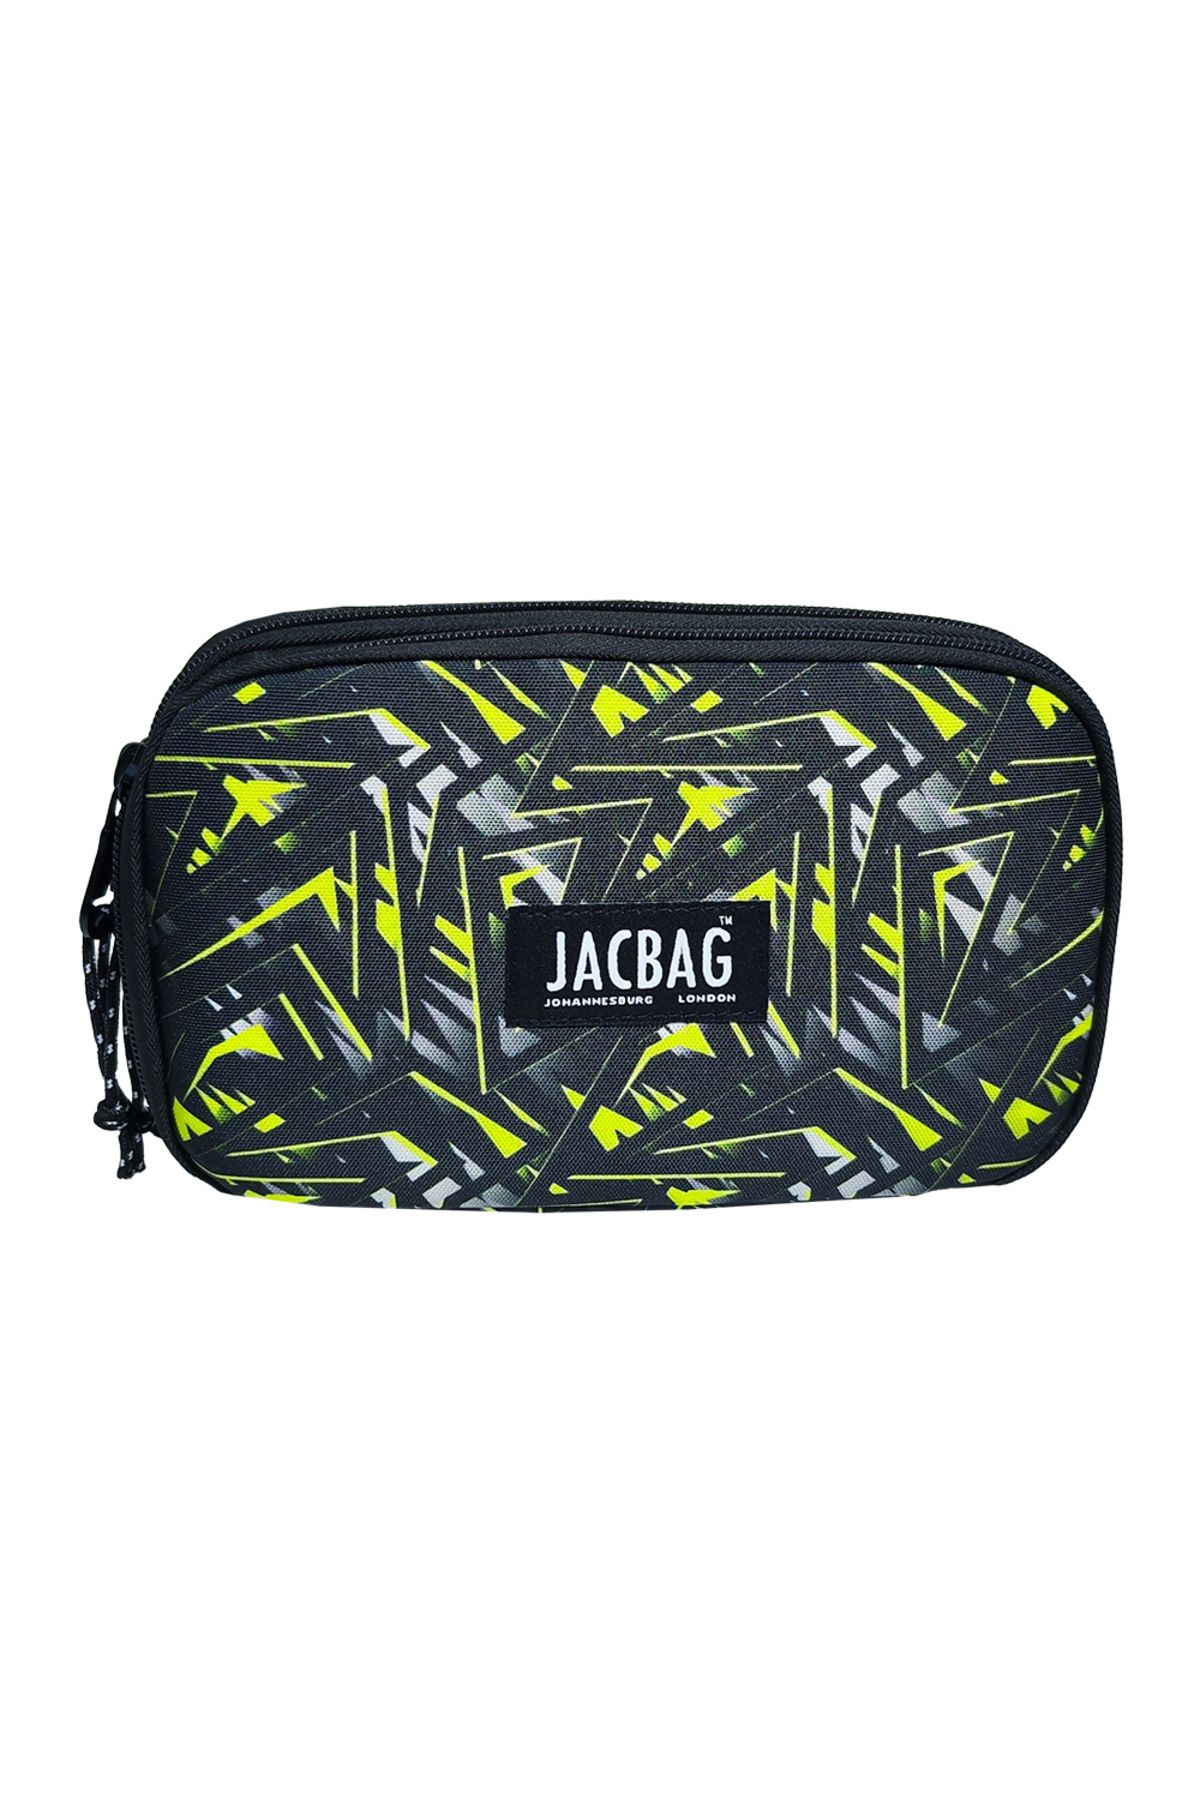 jacbag Double Cover-çift Kapaklı Kalem Kutu